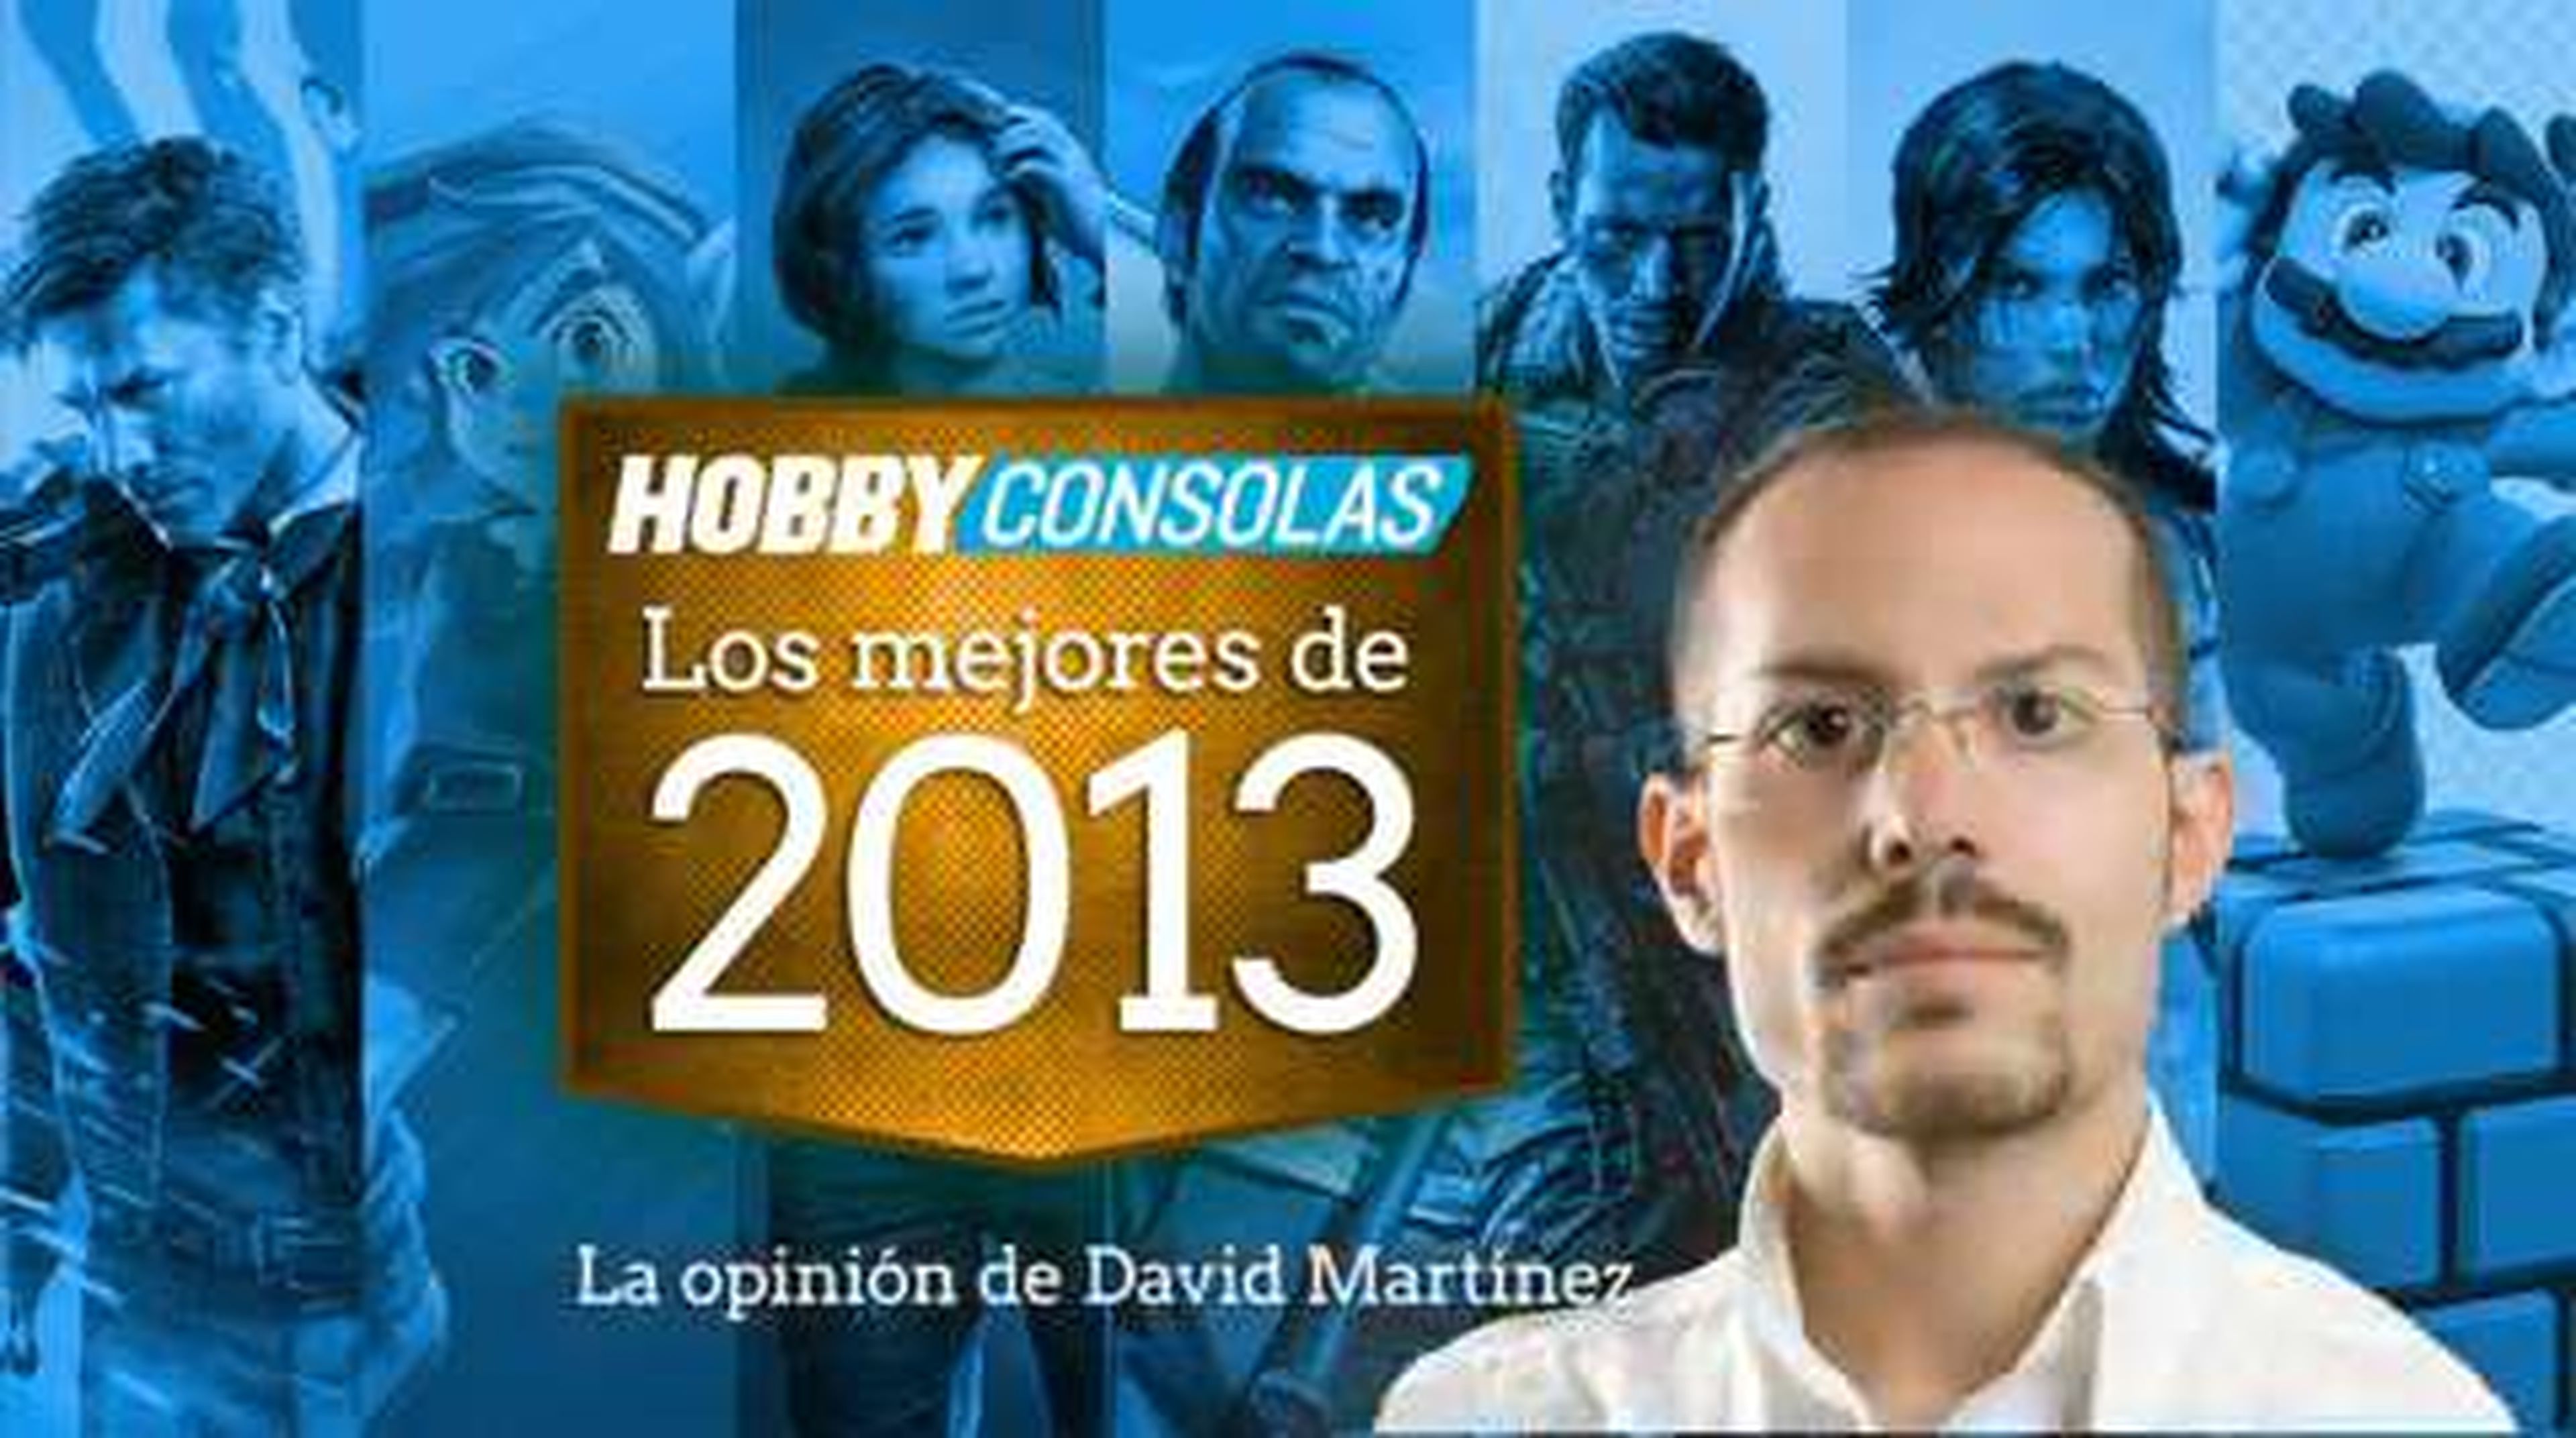 Lo mejor de 2013 (HD) David Martínez en HobbyConsolas.com